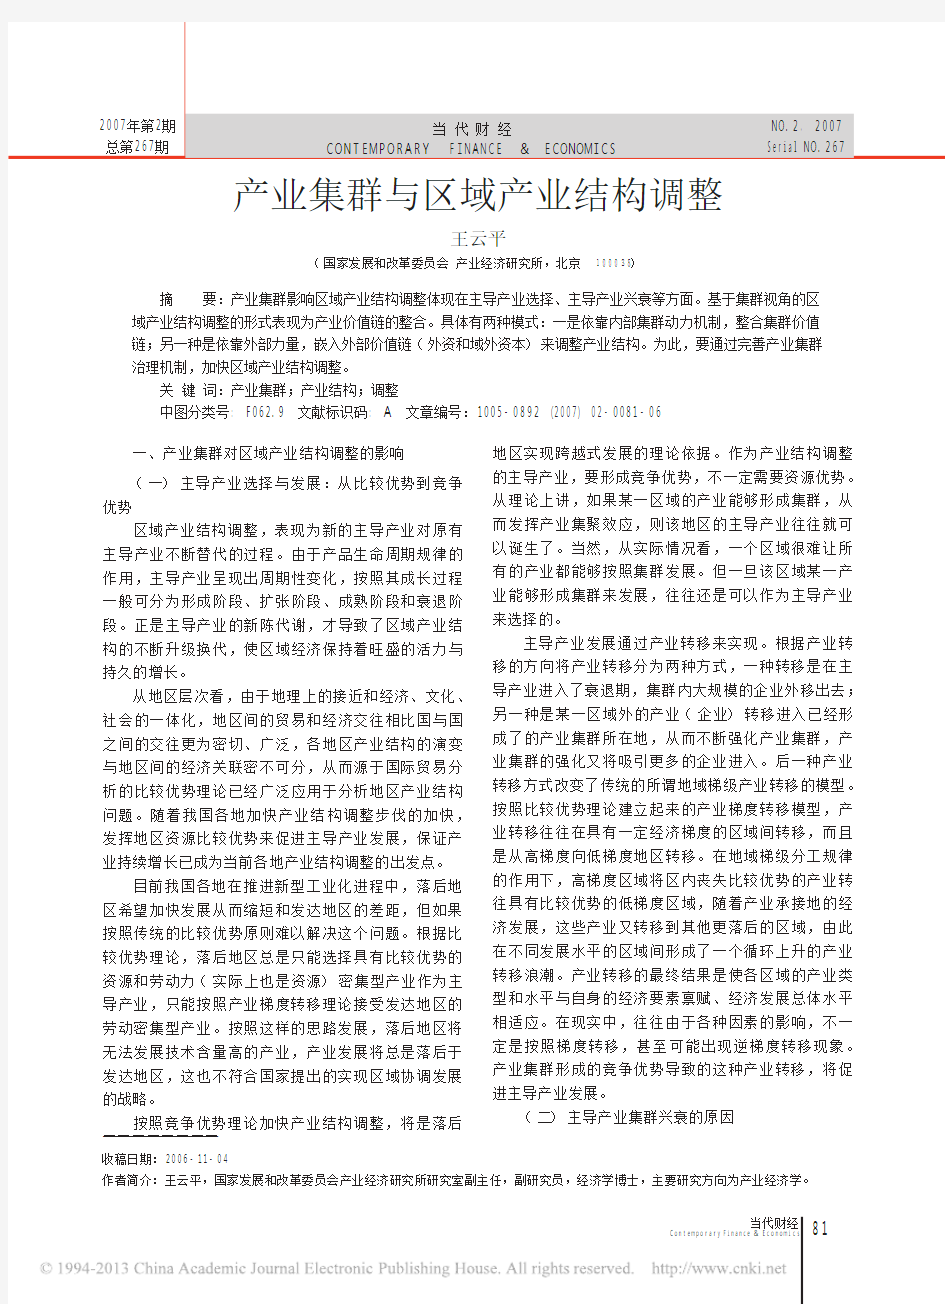 产业集群与区域产业结构调整_王云平